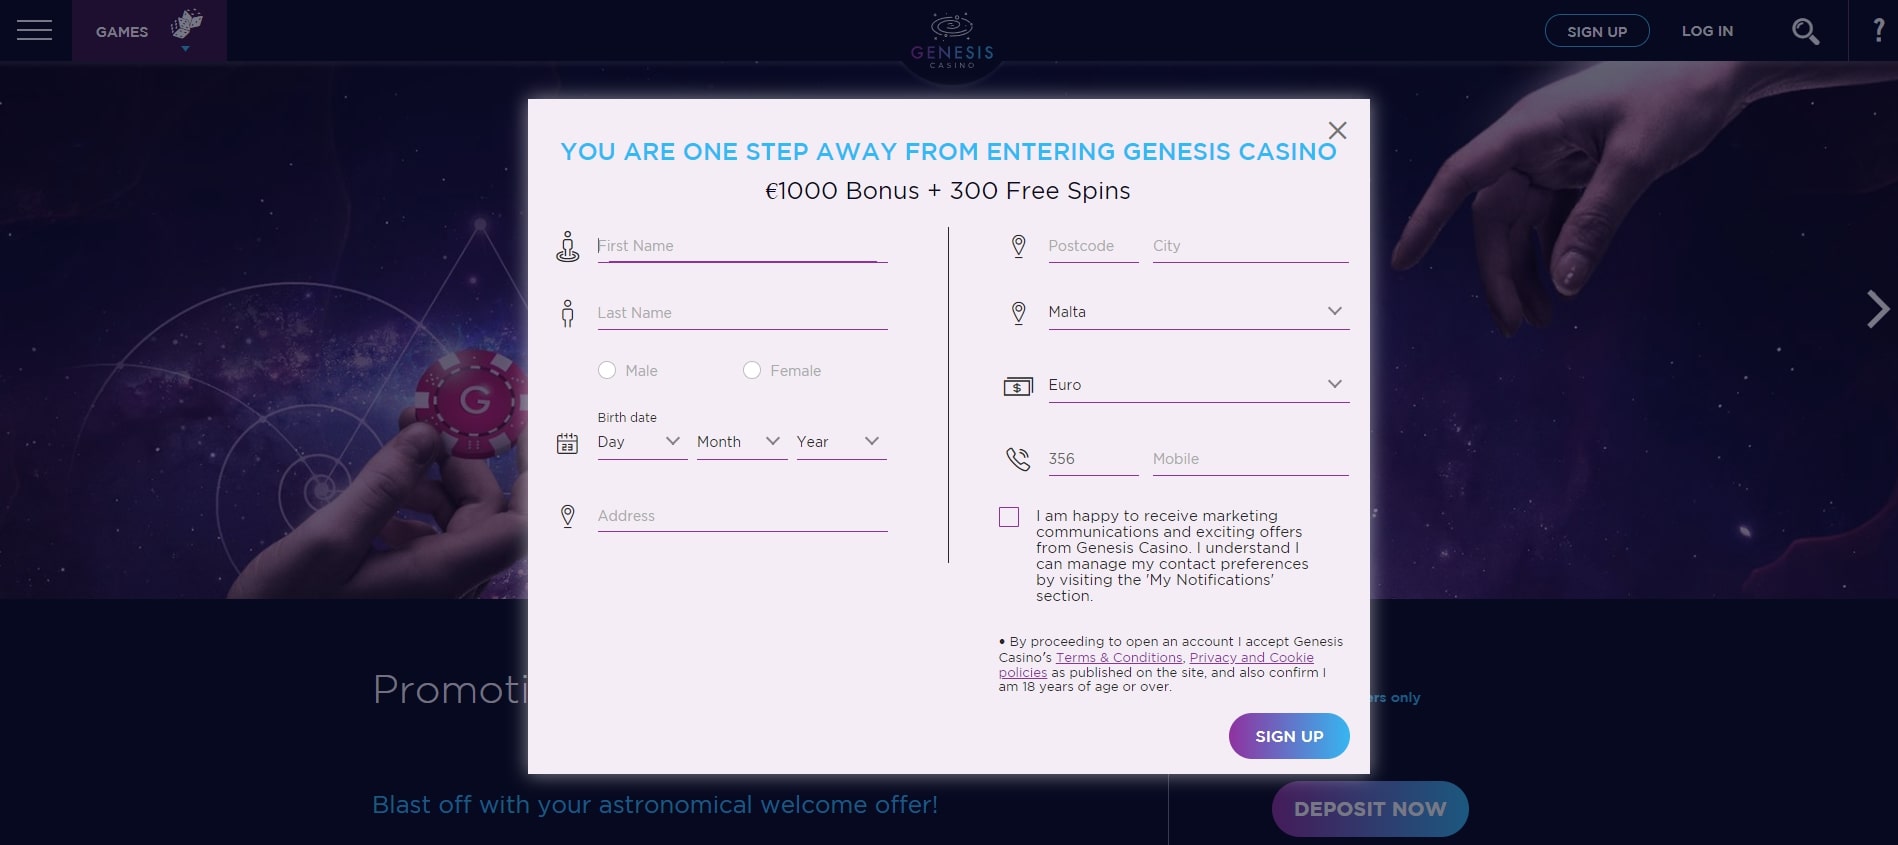 Registration Form at Genesis Casino